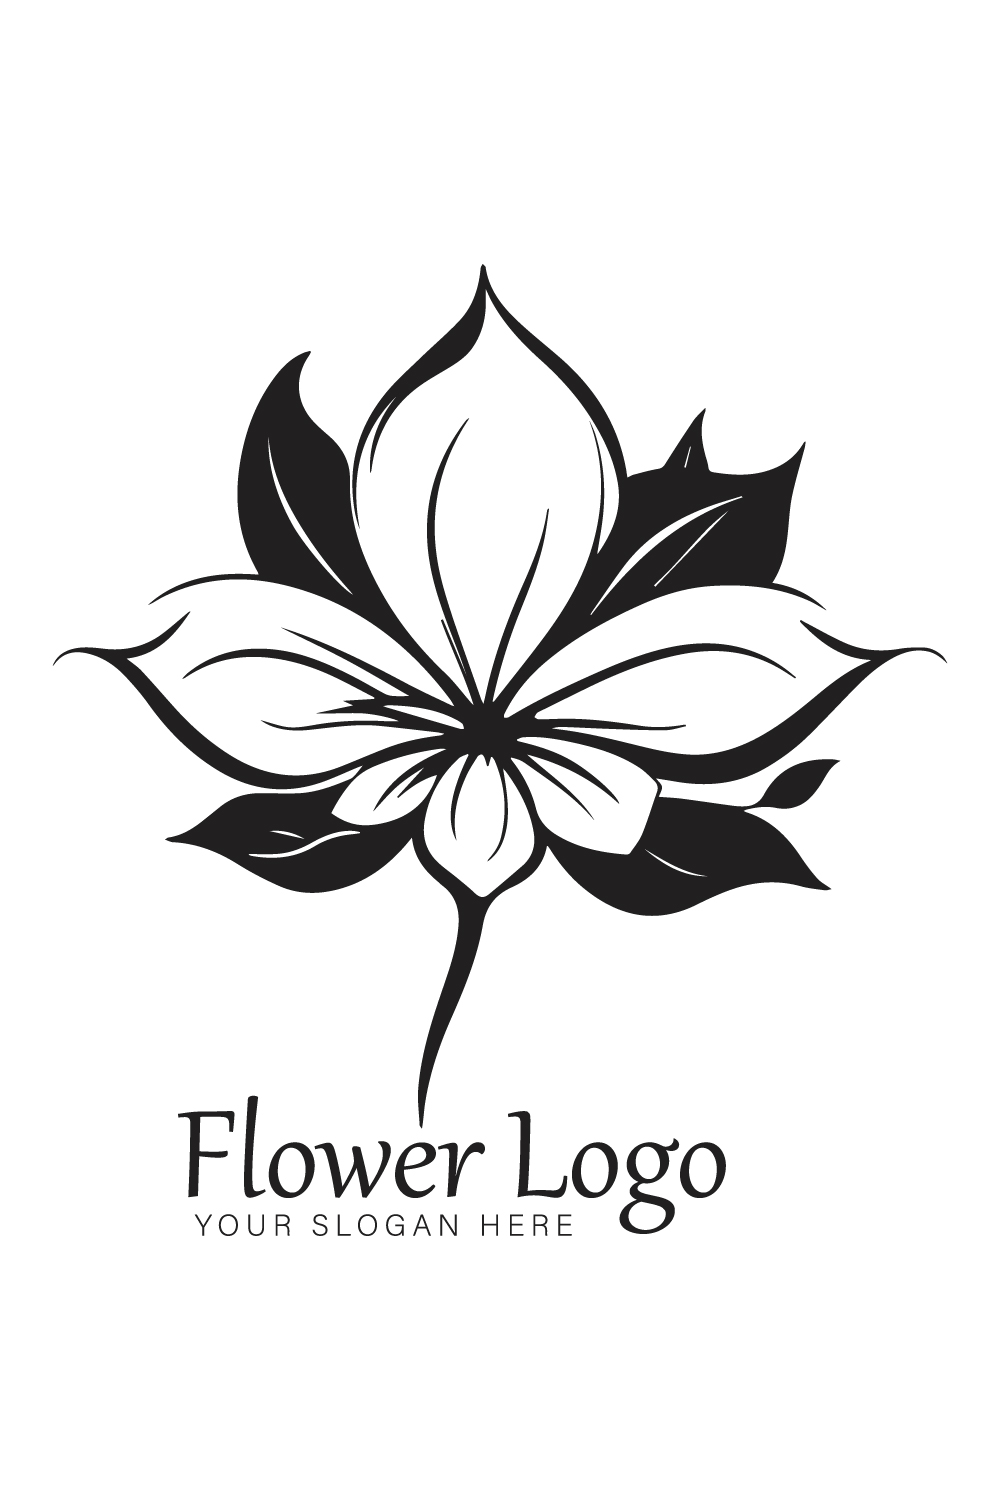 Flower Logo pinterest preview image.